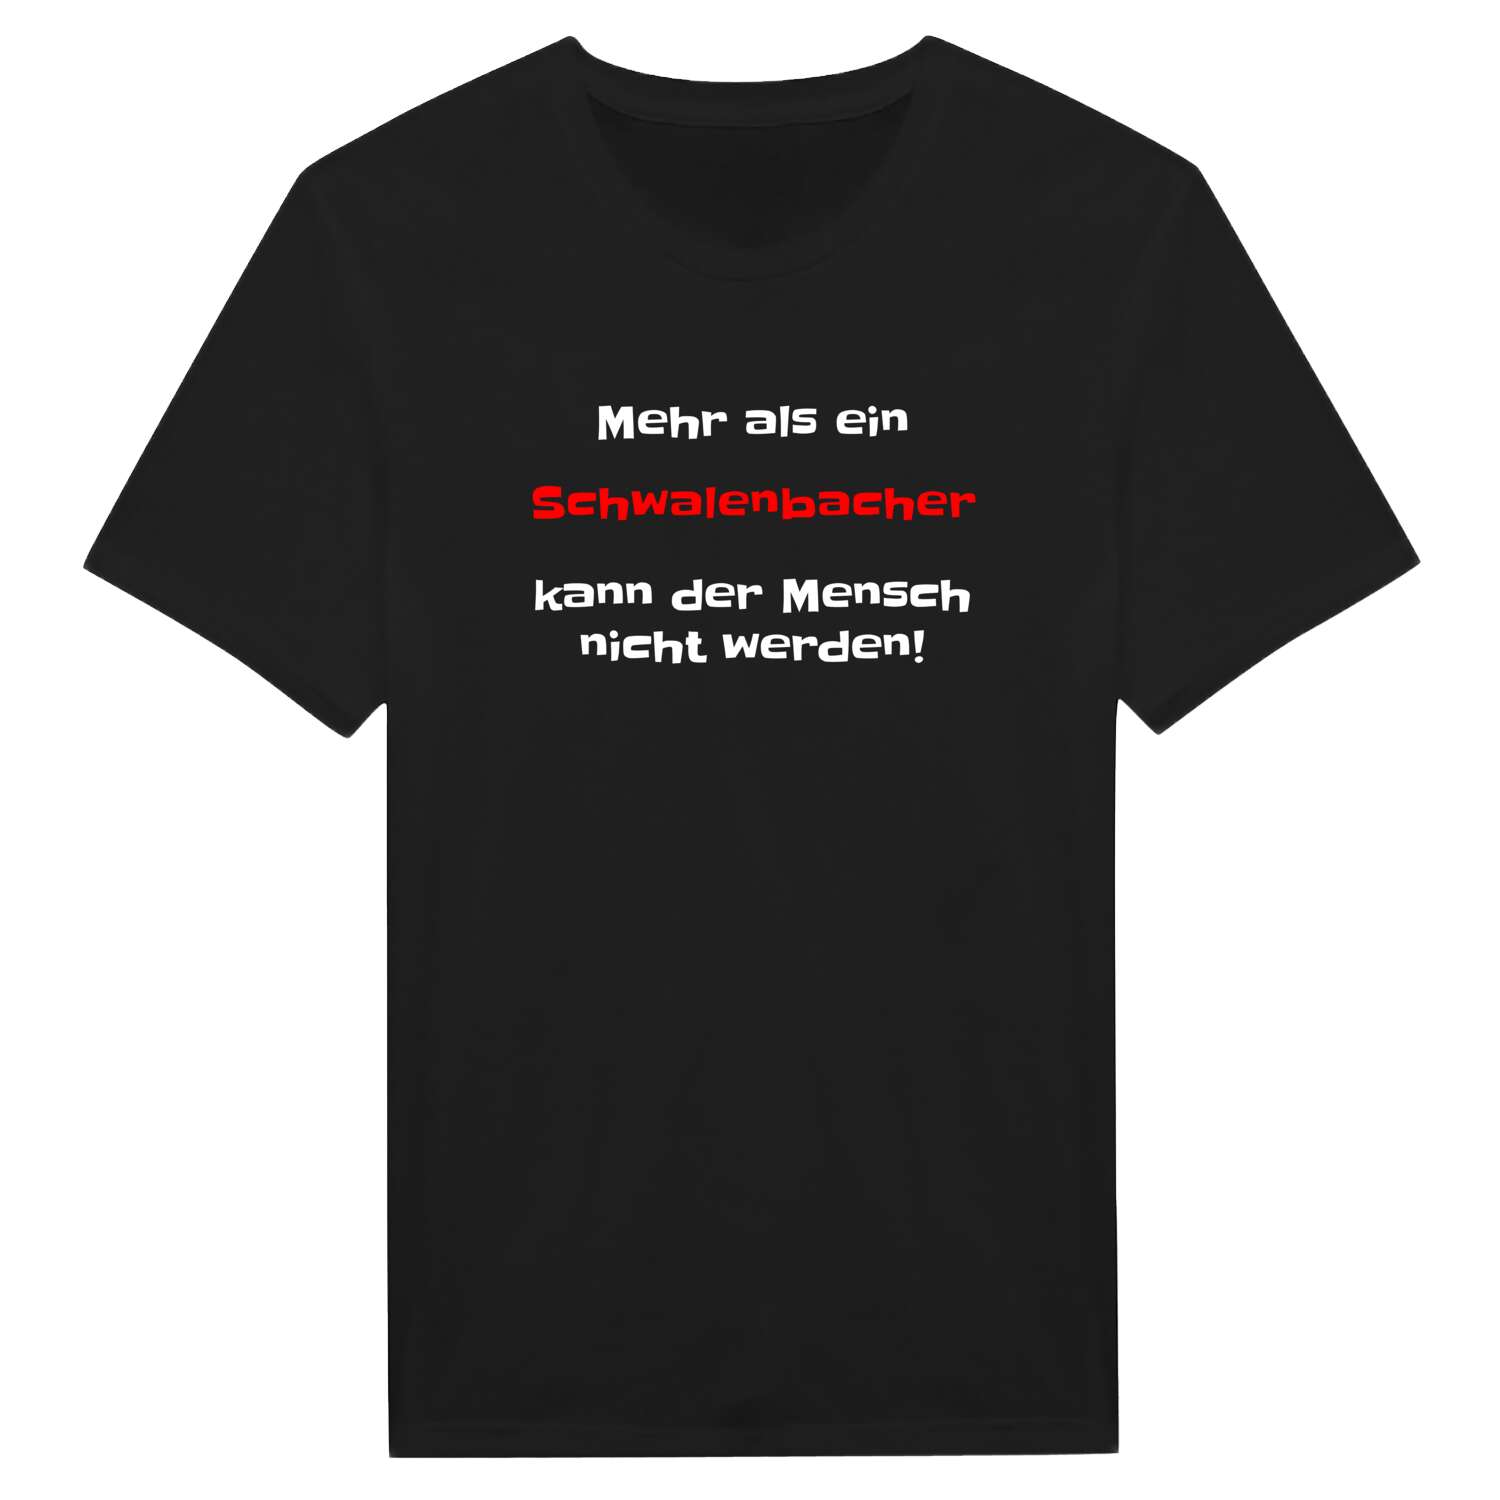 Schwalenbach T-Shirt »Mehr als ein«